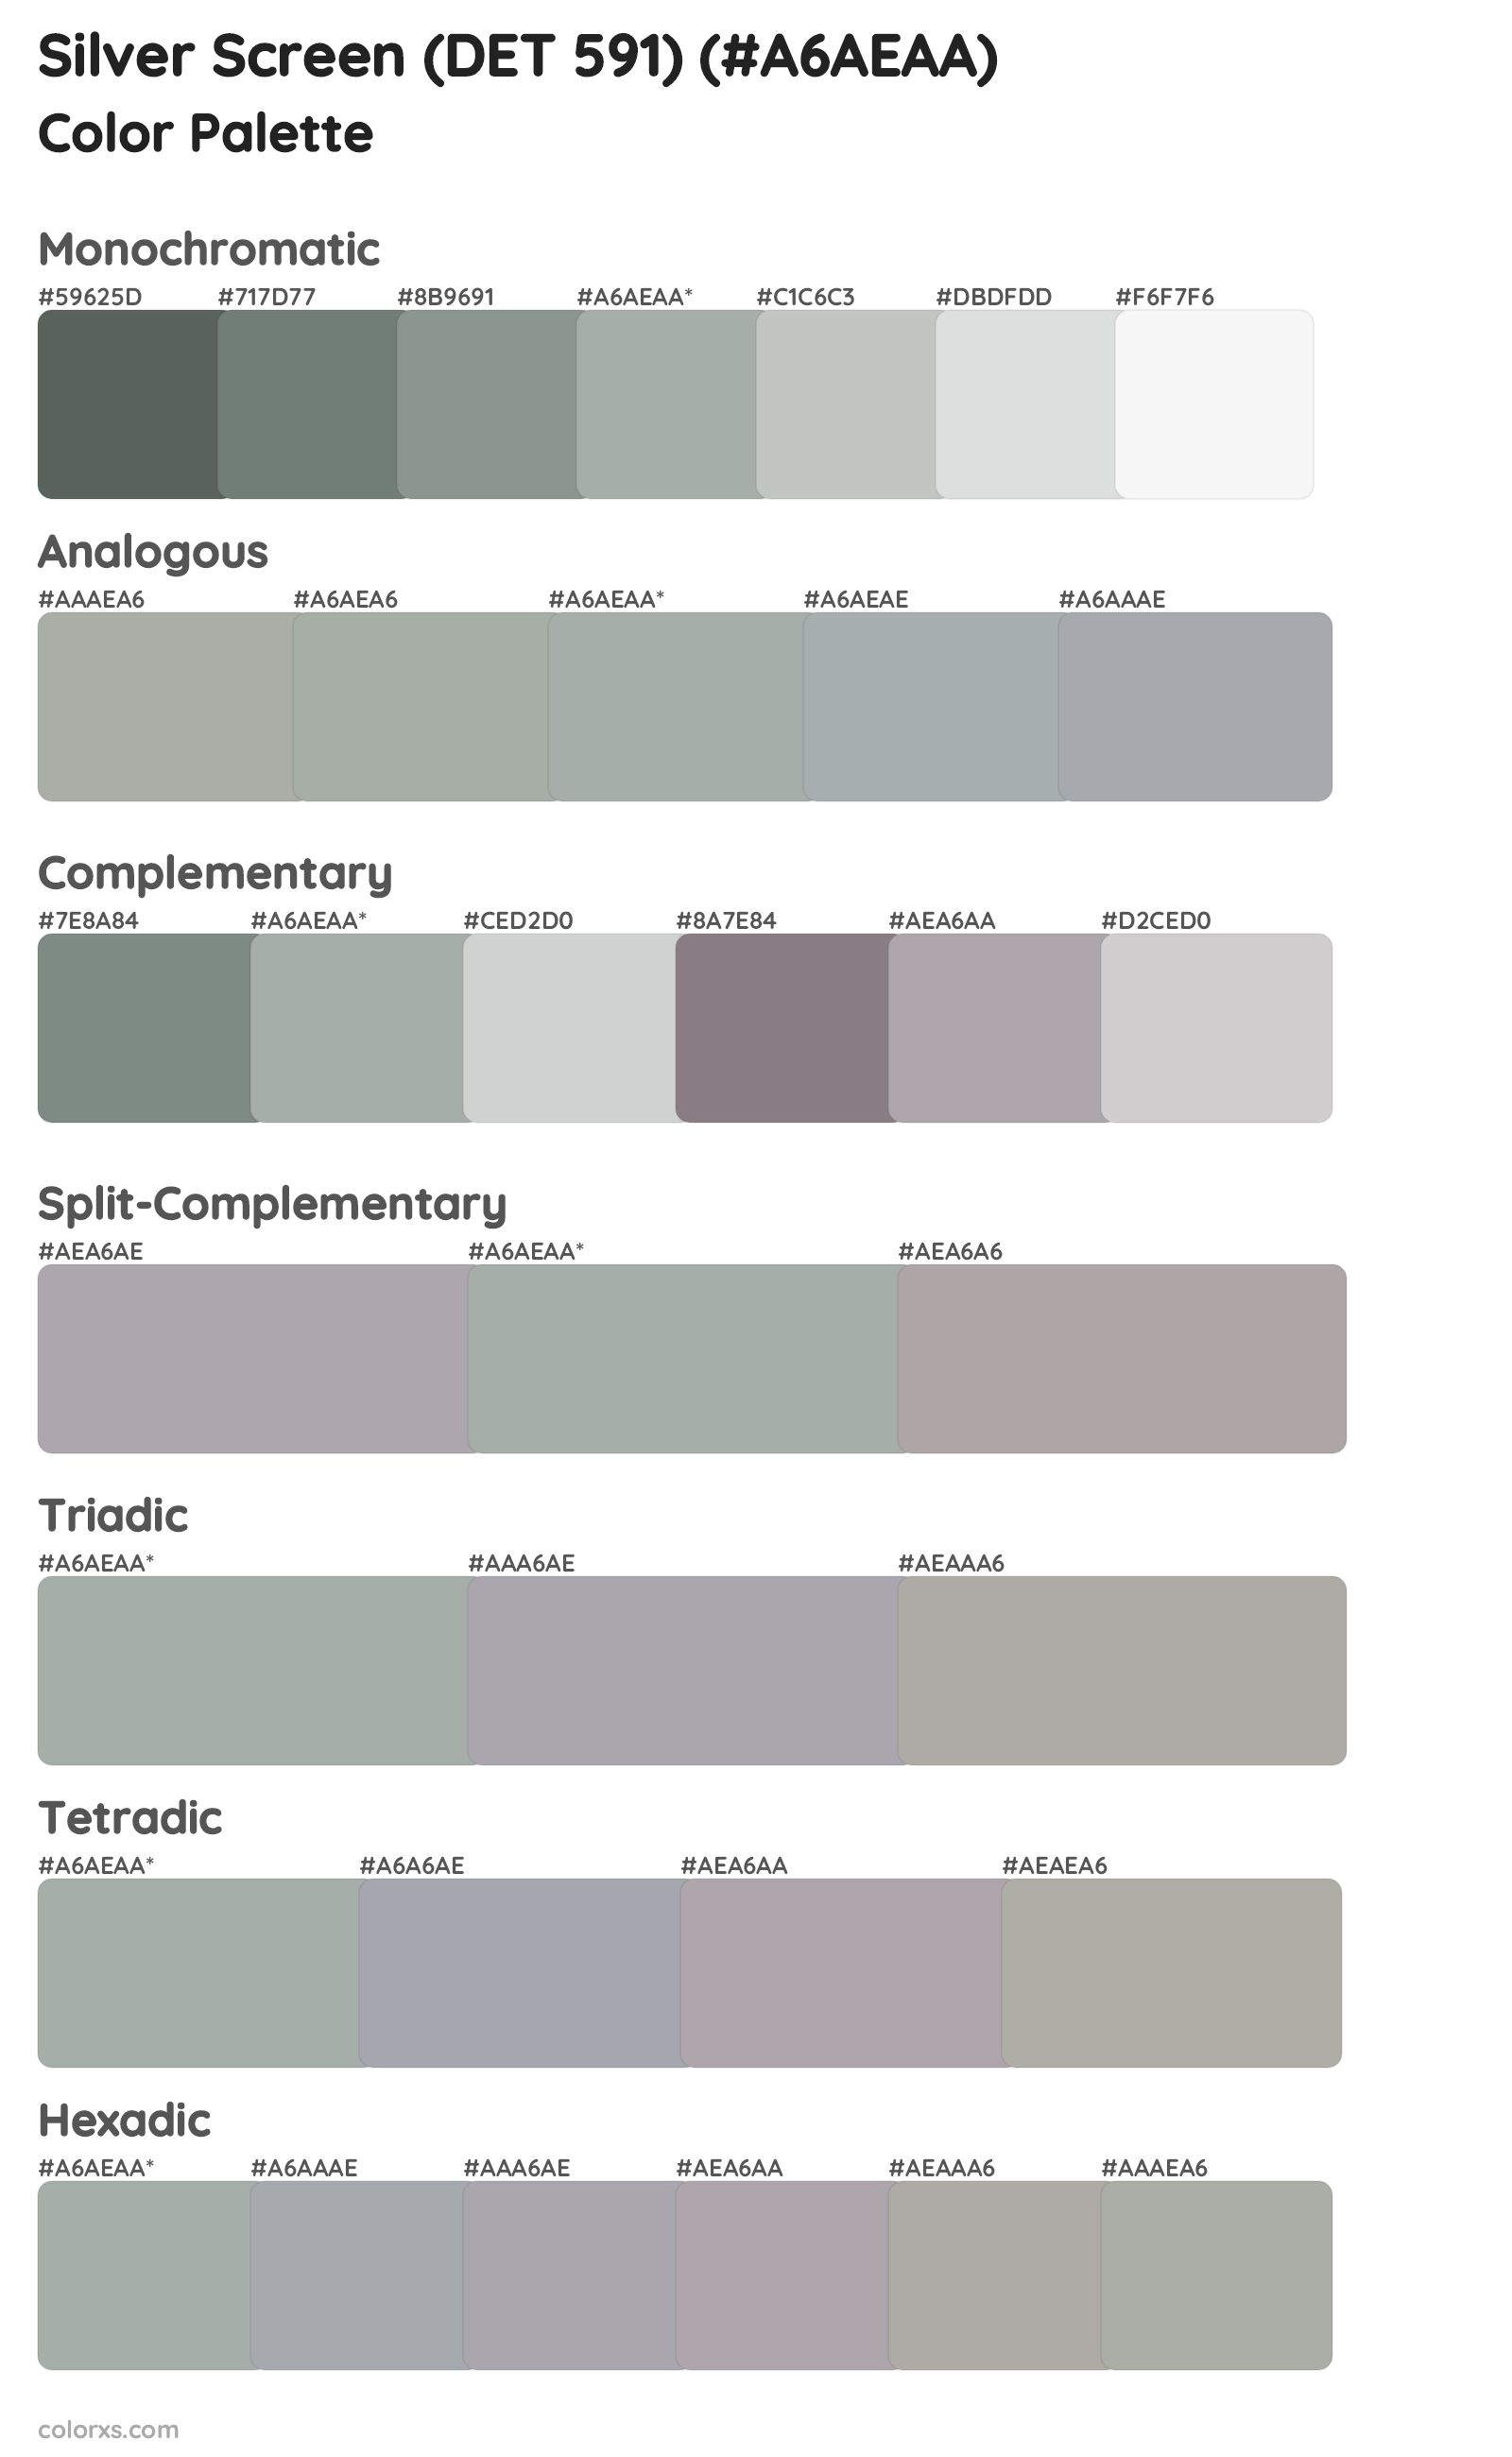 Silver Screen (DET 591) Color Scheme Palettes